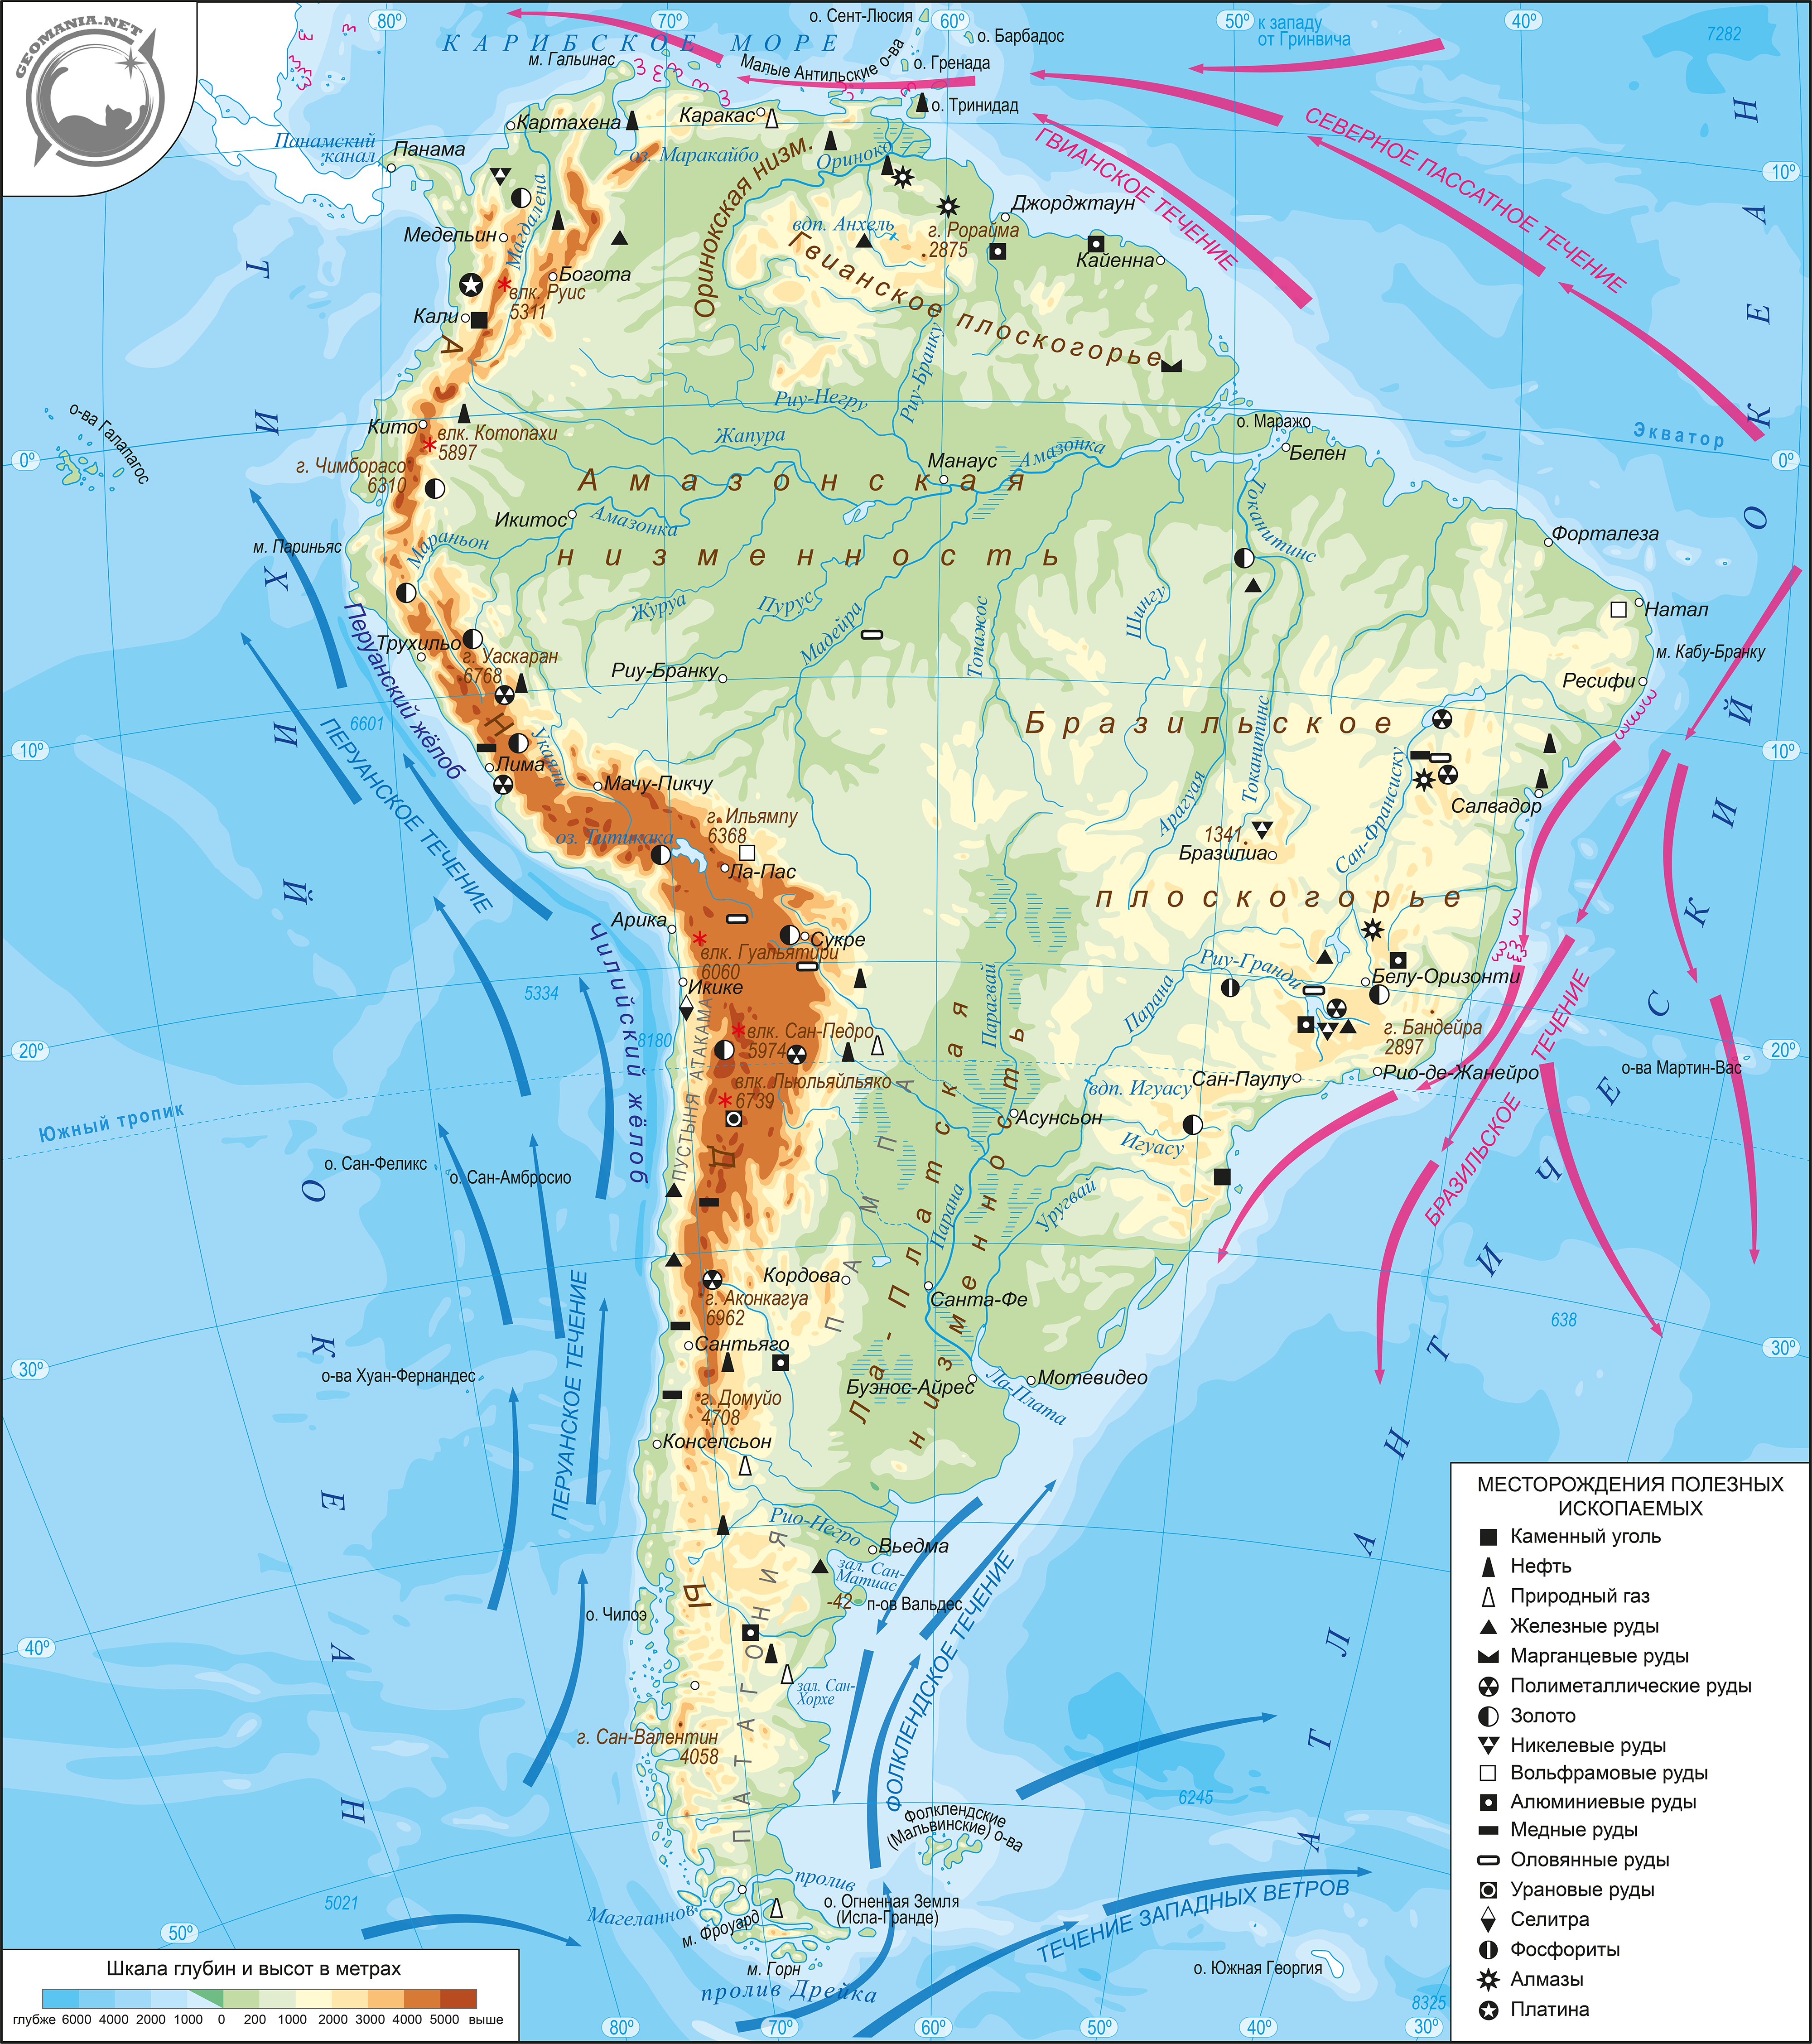 Кк южная америка 7. Физическая карта Южной Америки. Карта Южной Америки географическая крупная. Географические объекты Южной Америки на карте. Физическая карта Латинской Америки.